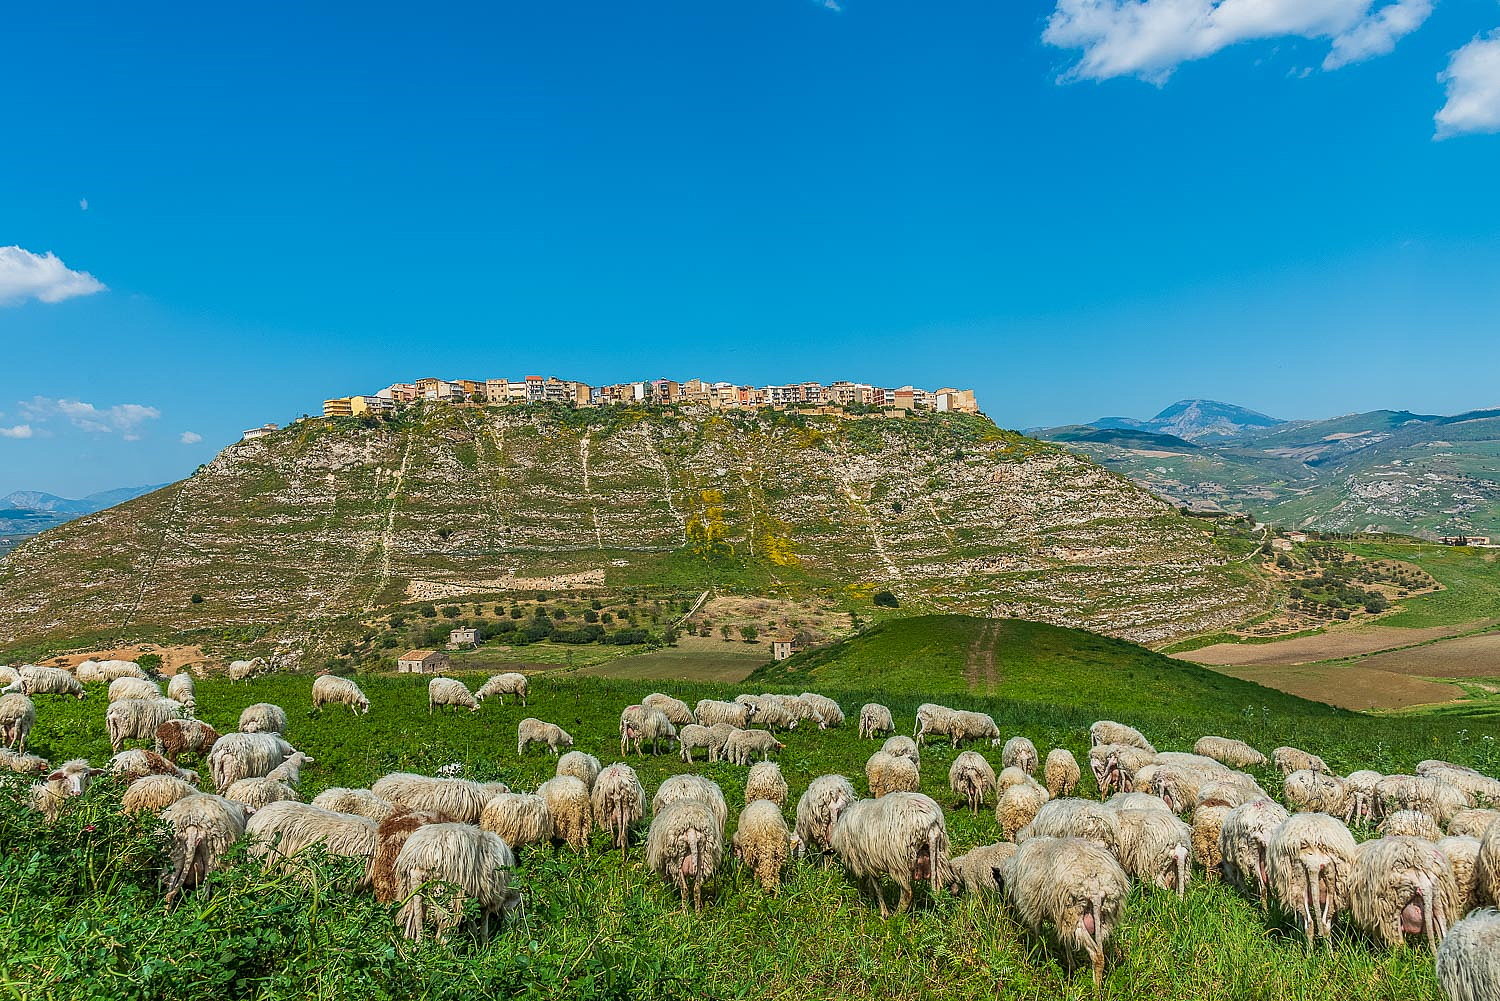 Schafsherde, Stadt oben auf dem Berg